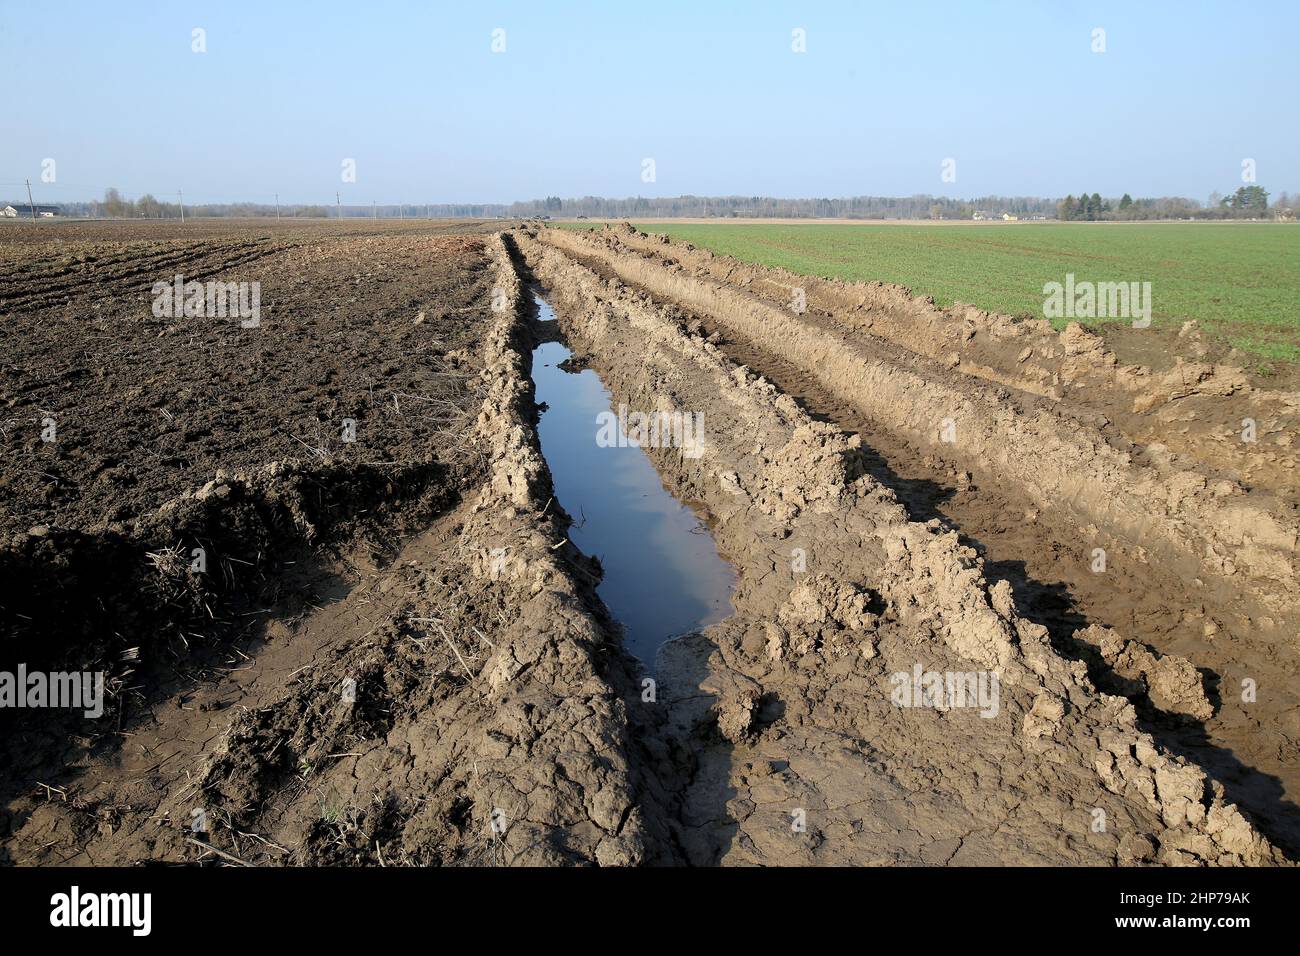 Der Traktor fährt auf nassem Untergrund. Beschädigte Felder, die von Landwirten angebaut werden Stockfoto